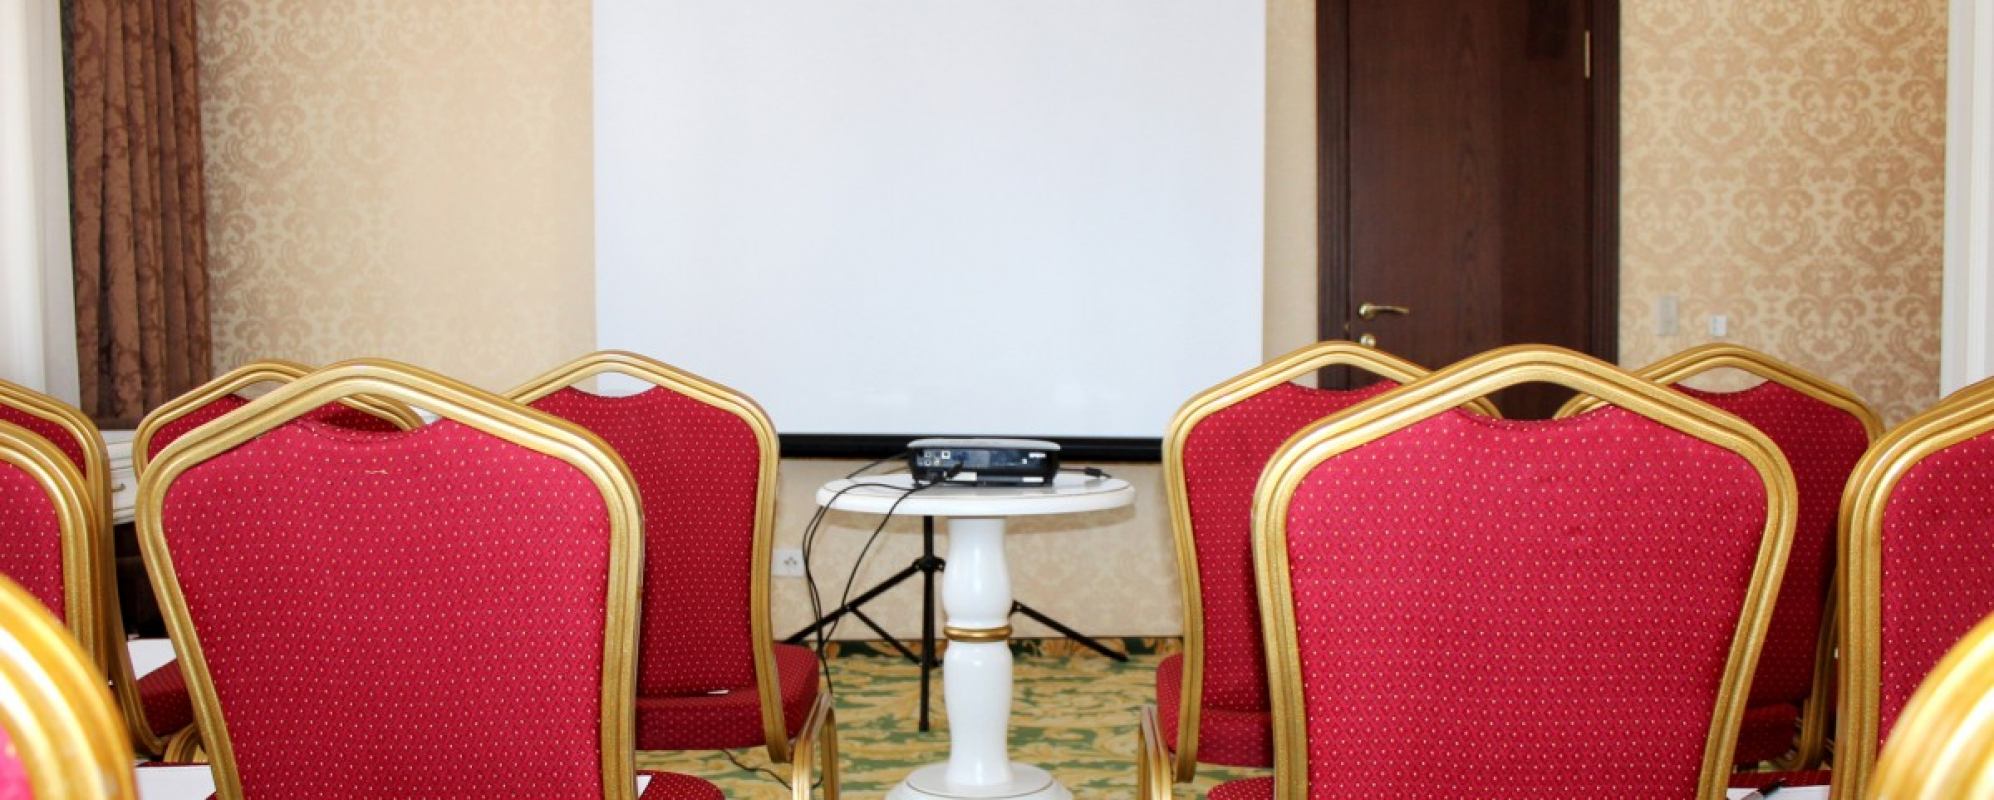 Фотографии комнаты для переговоров Атташе